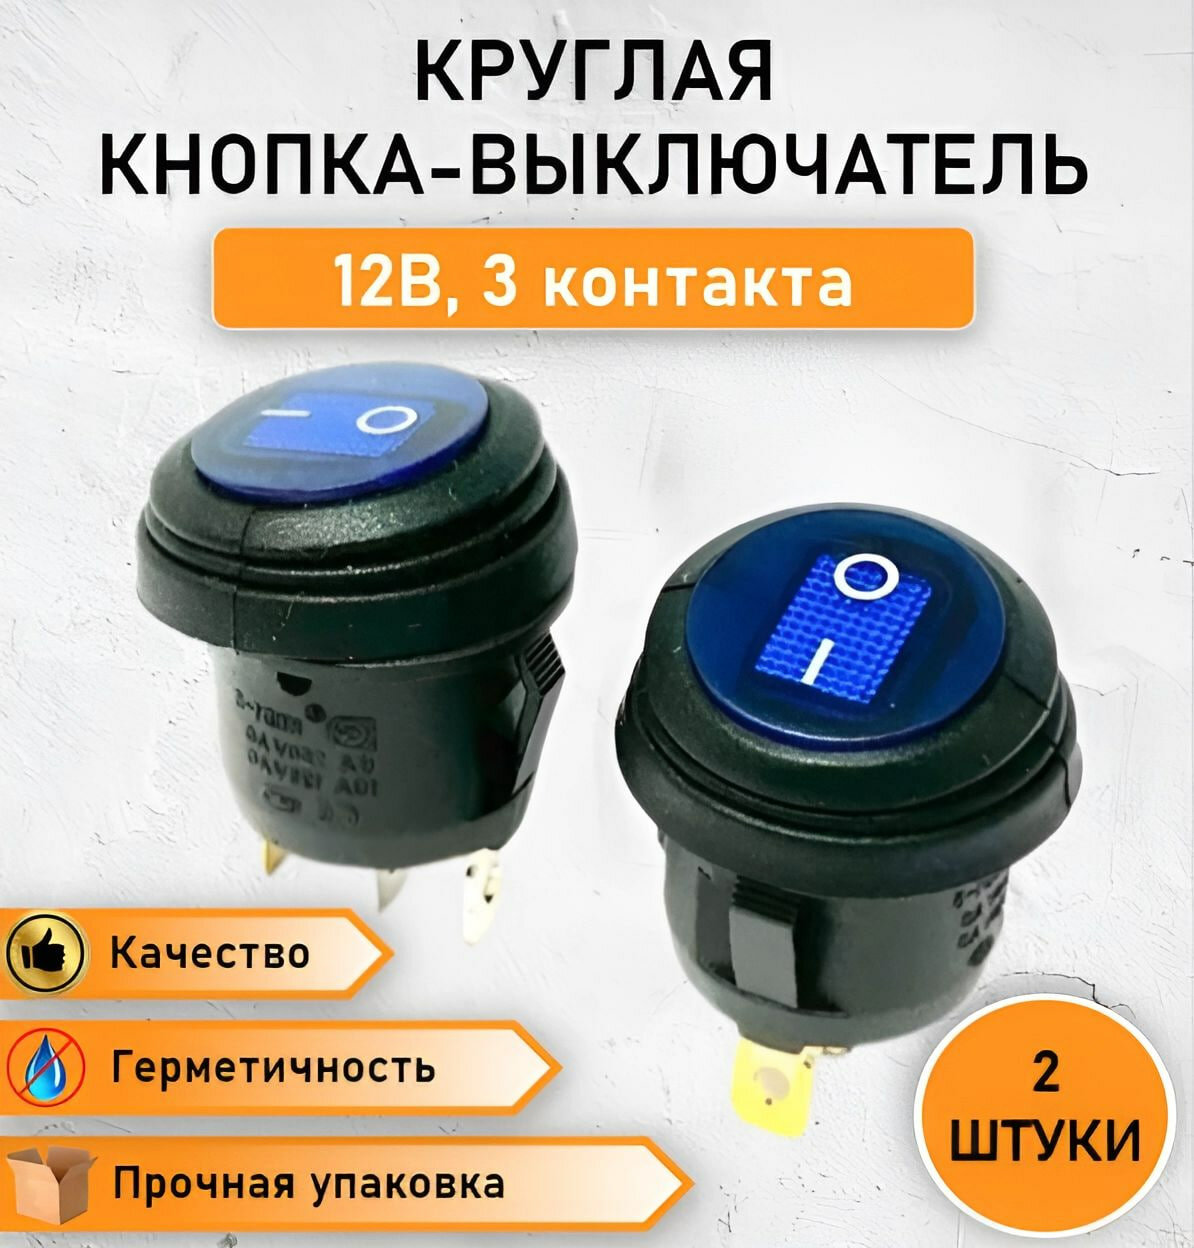 2 ШТ. Герметичная круглая кнопка - выключатель, переключатель влагозащищенный ON-OFF с синей подсветкой, 10А, max. 12В трехконтактная, 2 позиции